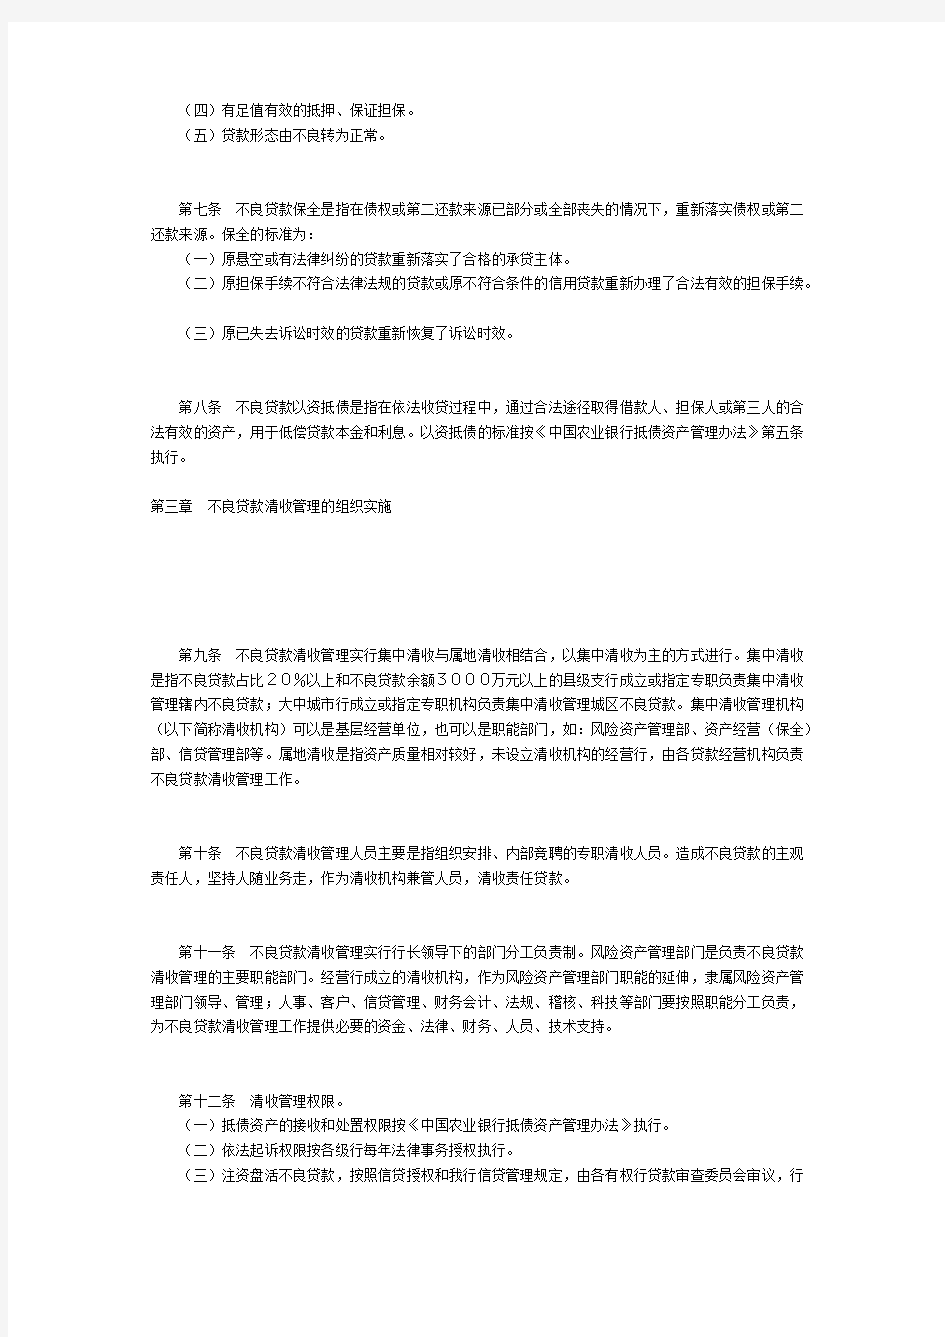 中国农业银行不良贷款管理办法